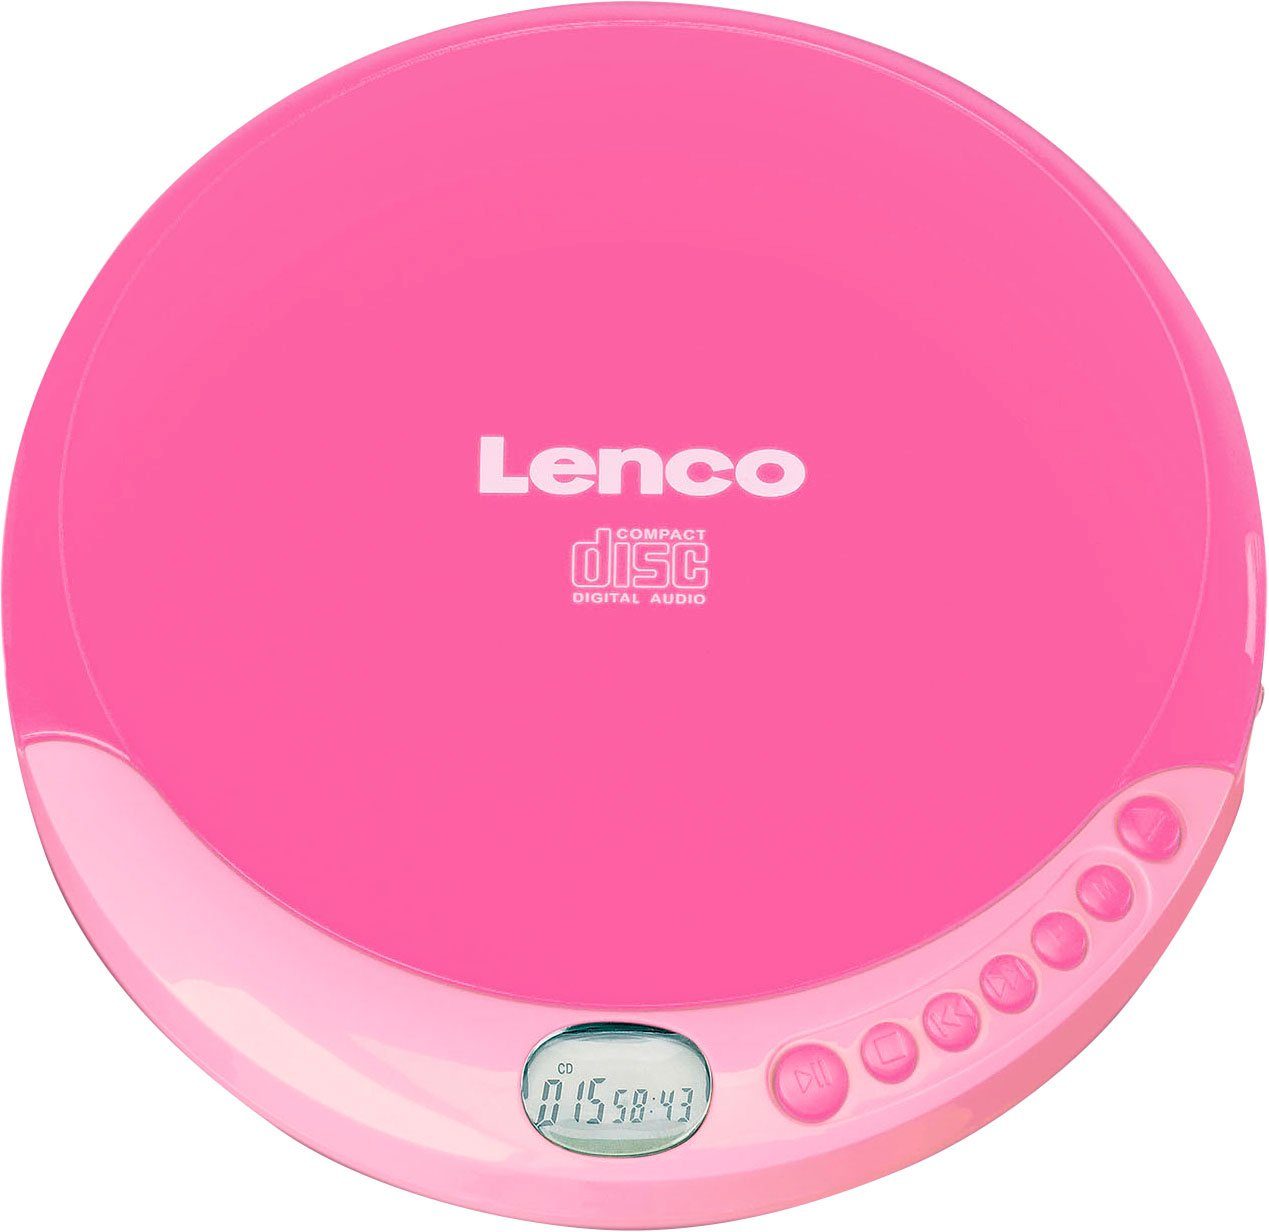 CD-011 rosa CD-Player Lenco